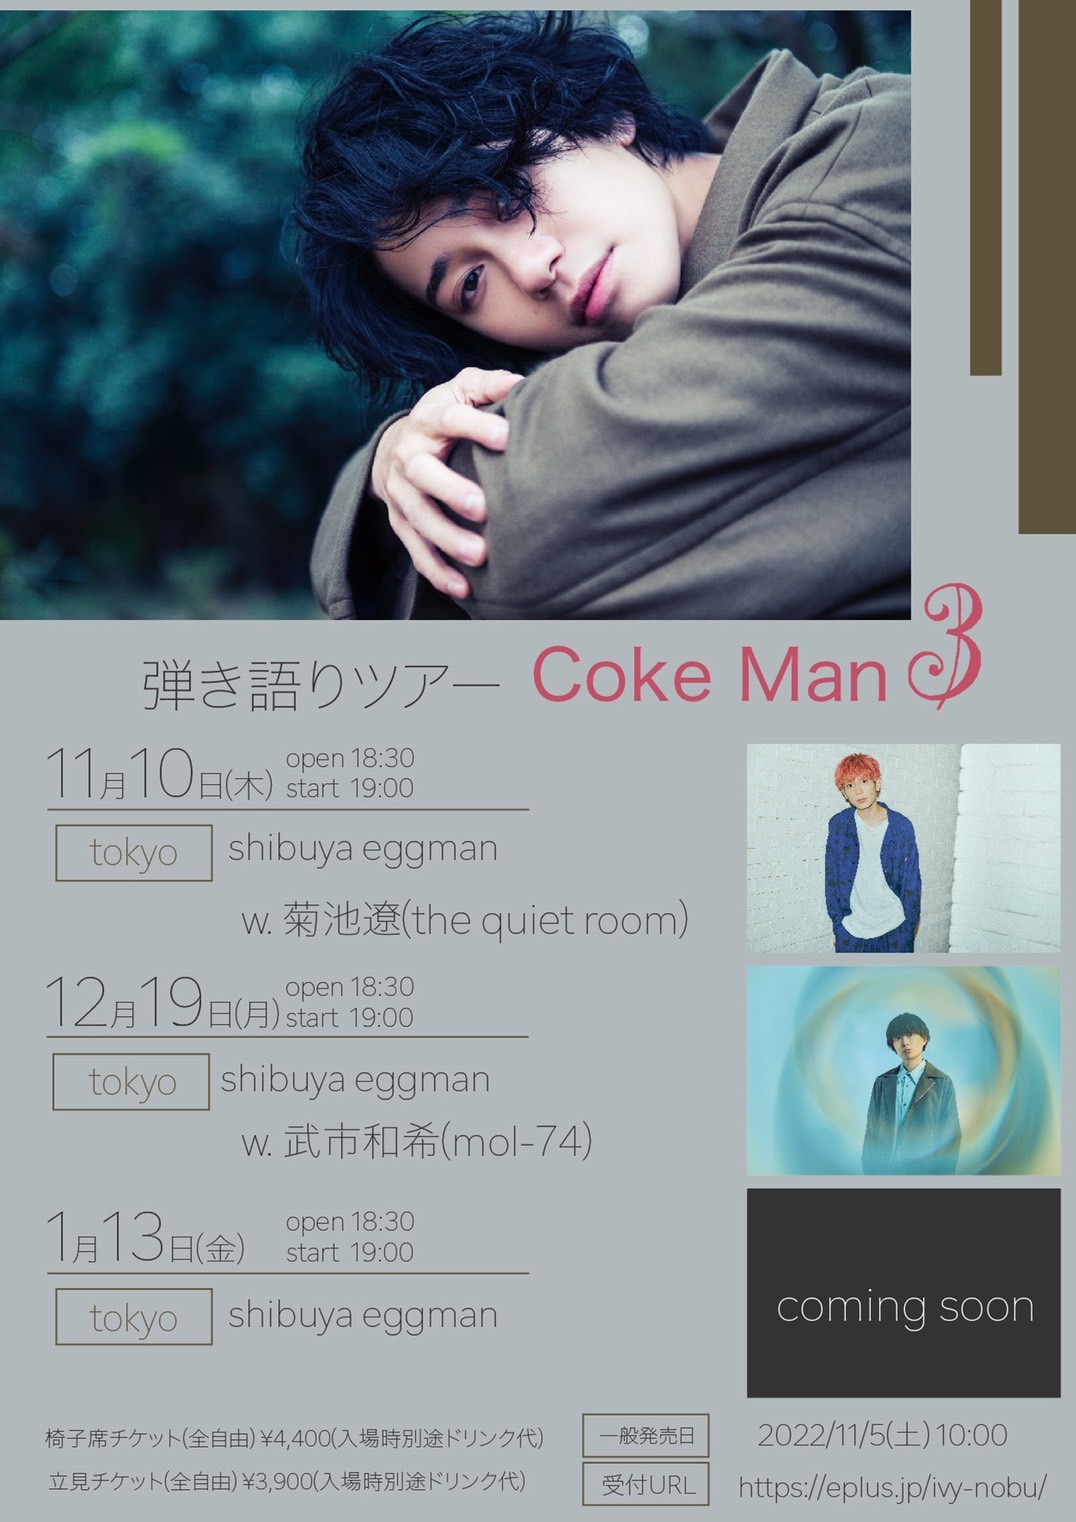 寺口宣明 弾き語りツアー”Coke Man3″